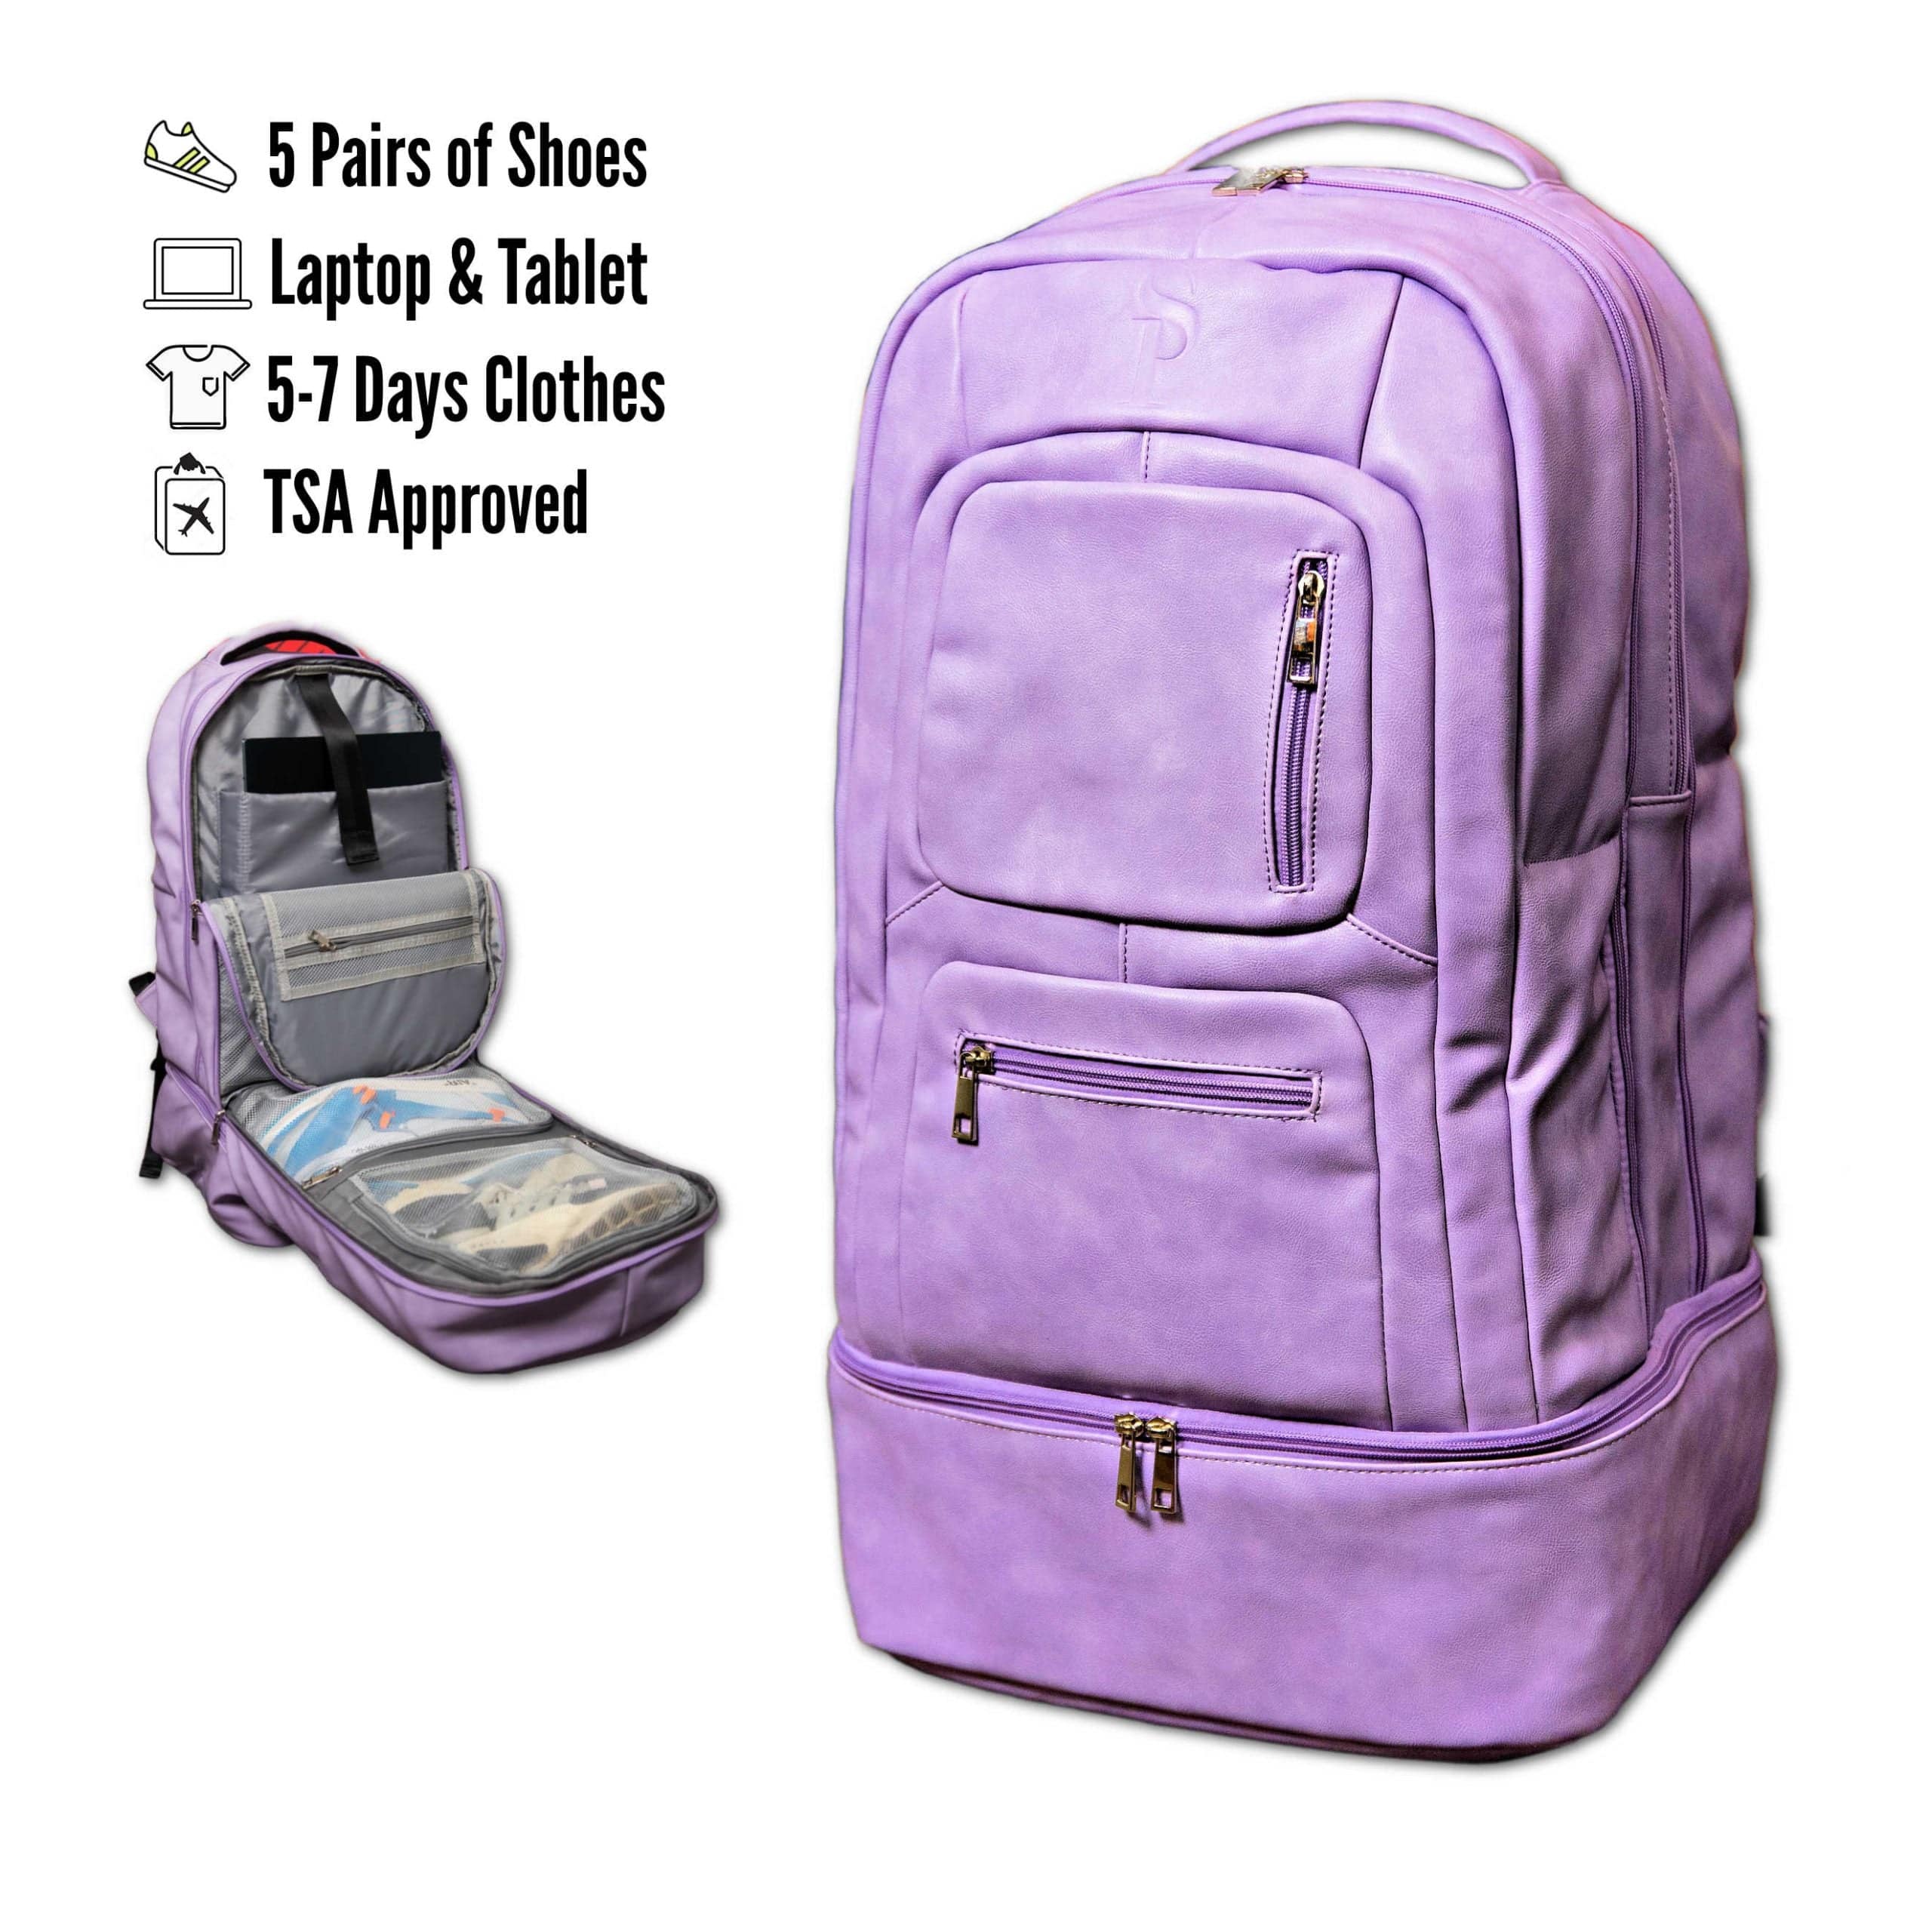 Purple Leather Bag